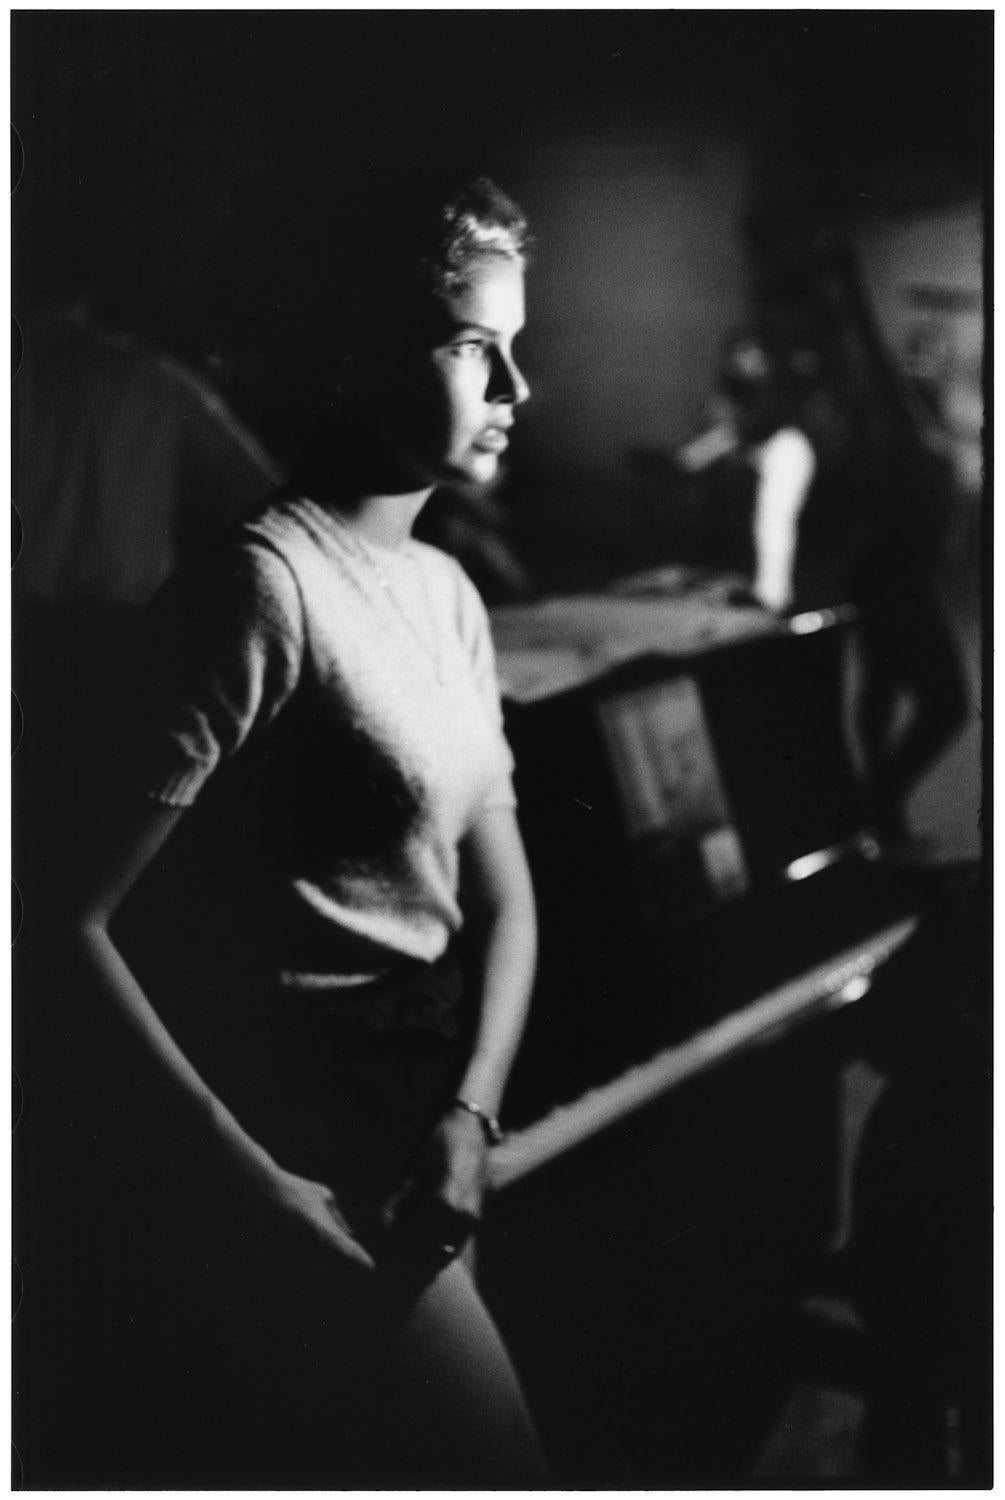 USA, New York City, 1954 - Elliott Erwitt (Photographie en noir et blanc)
Signé, inscrit avec le titre et daté sur l'étiquette de l'artiste qui l'accompagne
Tirage à la gélatine argentique, imprimé ultérieurement

Disponible en quatre tailles :
11 x